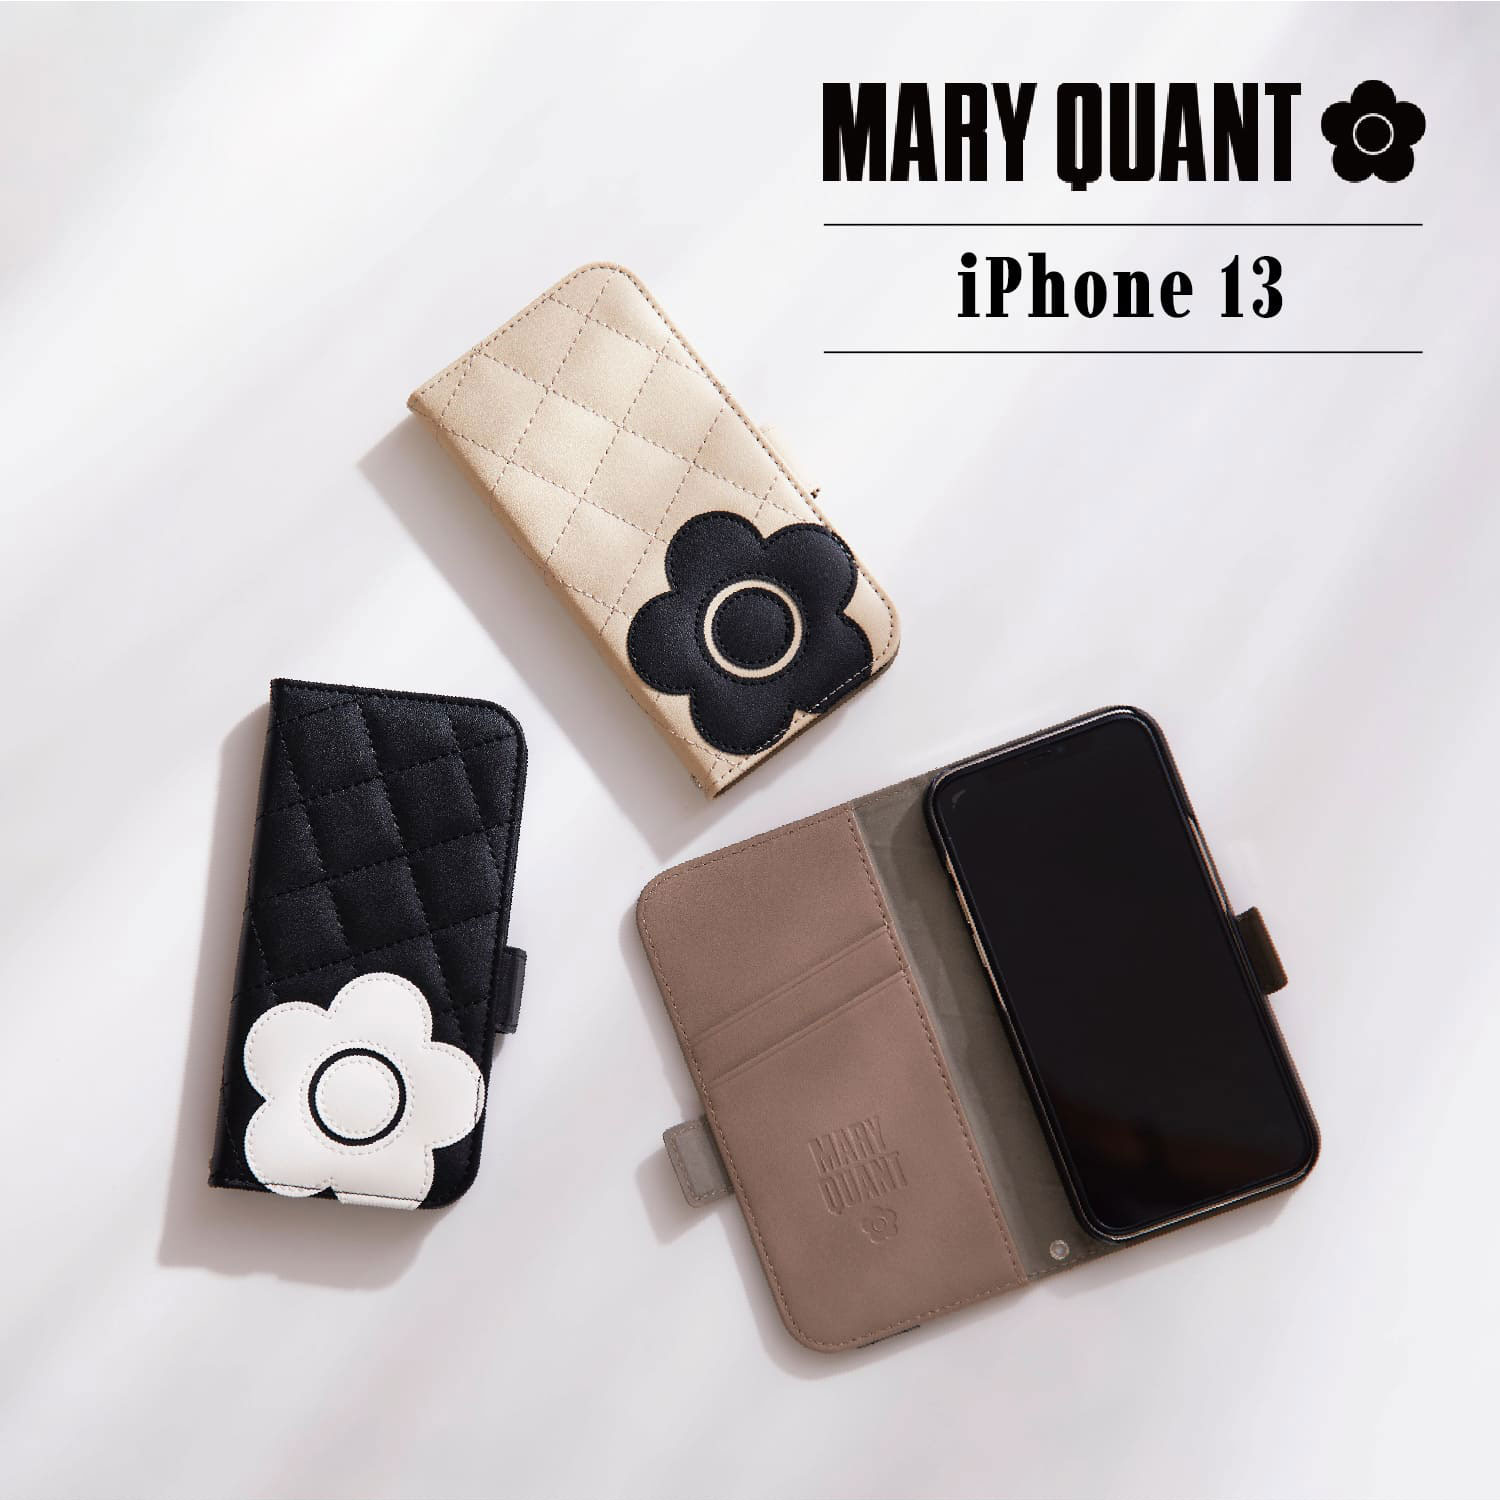 MARY QUANT マリークワント iPhone 13 ケース スマホケース 携帯 手帳型 レディース マリクワ PU QUILT LEATHER  BOOK TYPE CASE ブラック ベージュ 黒 IP13-MQ01 91％以上節約